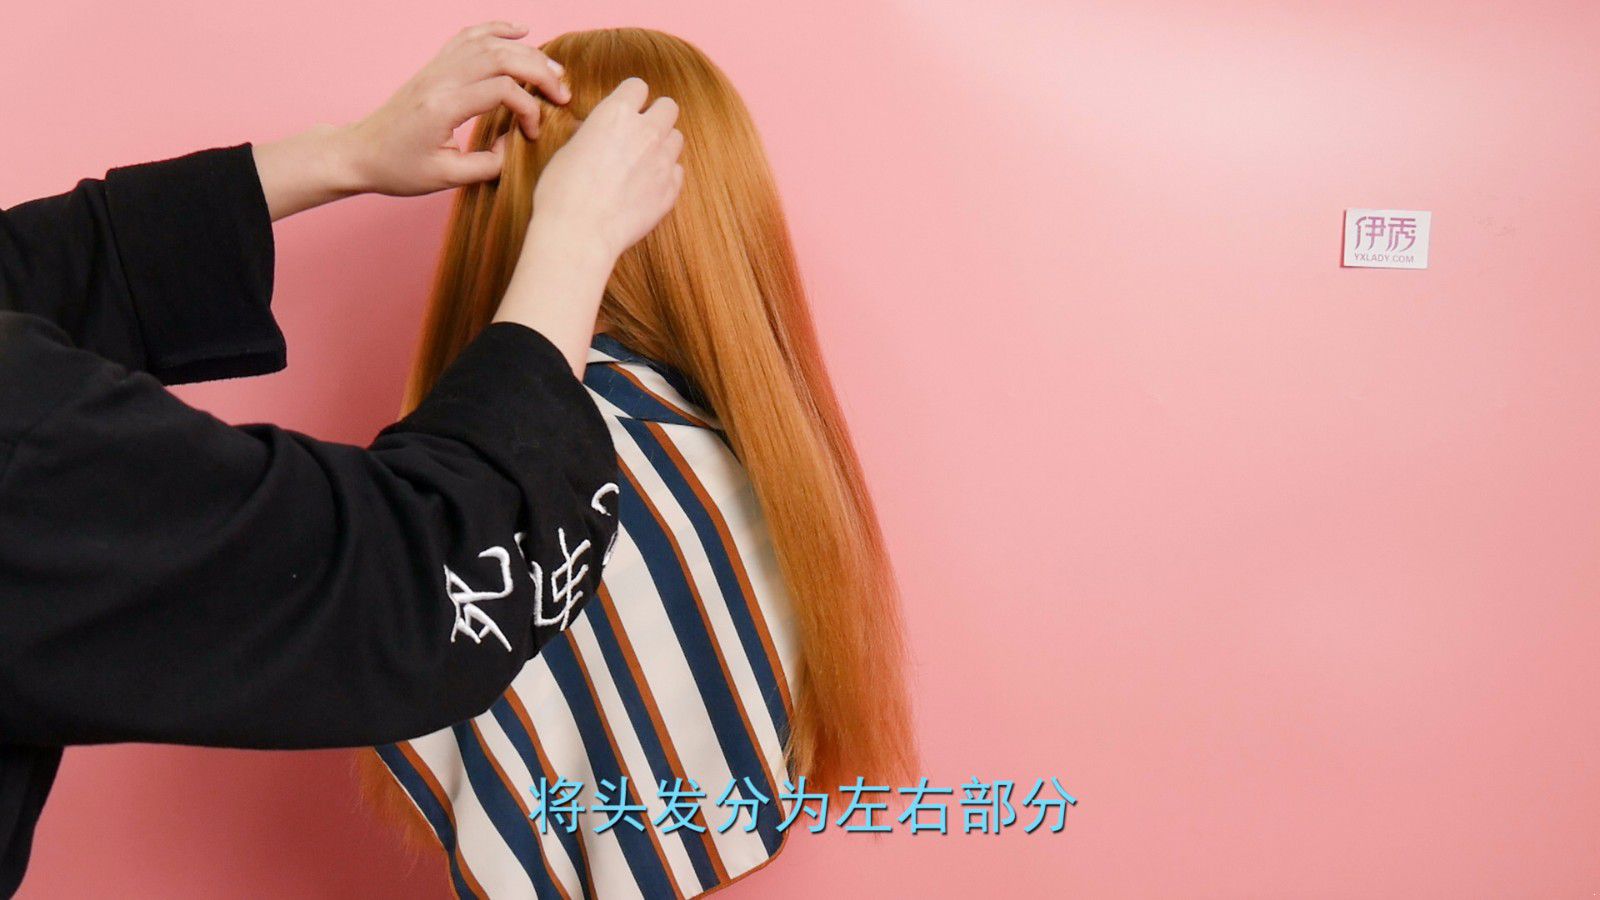 直发发型怎么绑 简单淑女的发型教程_伊秀视频|yxlady.com